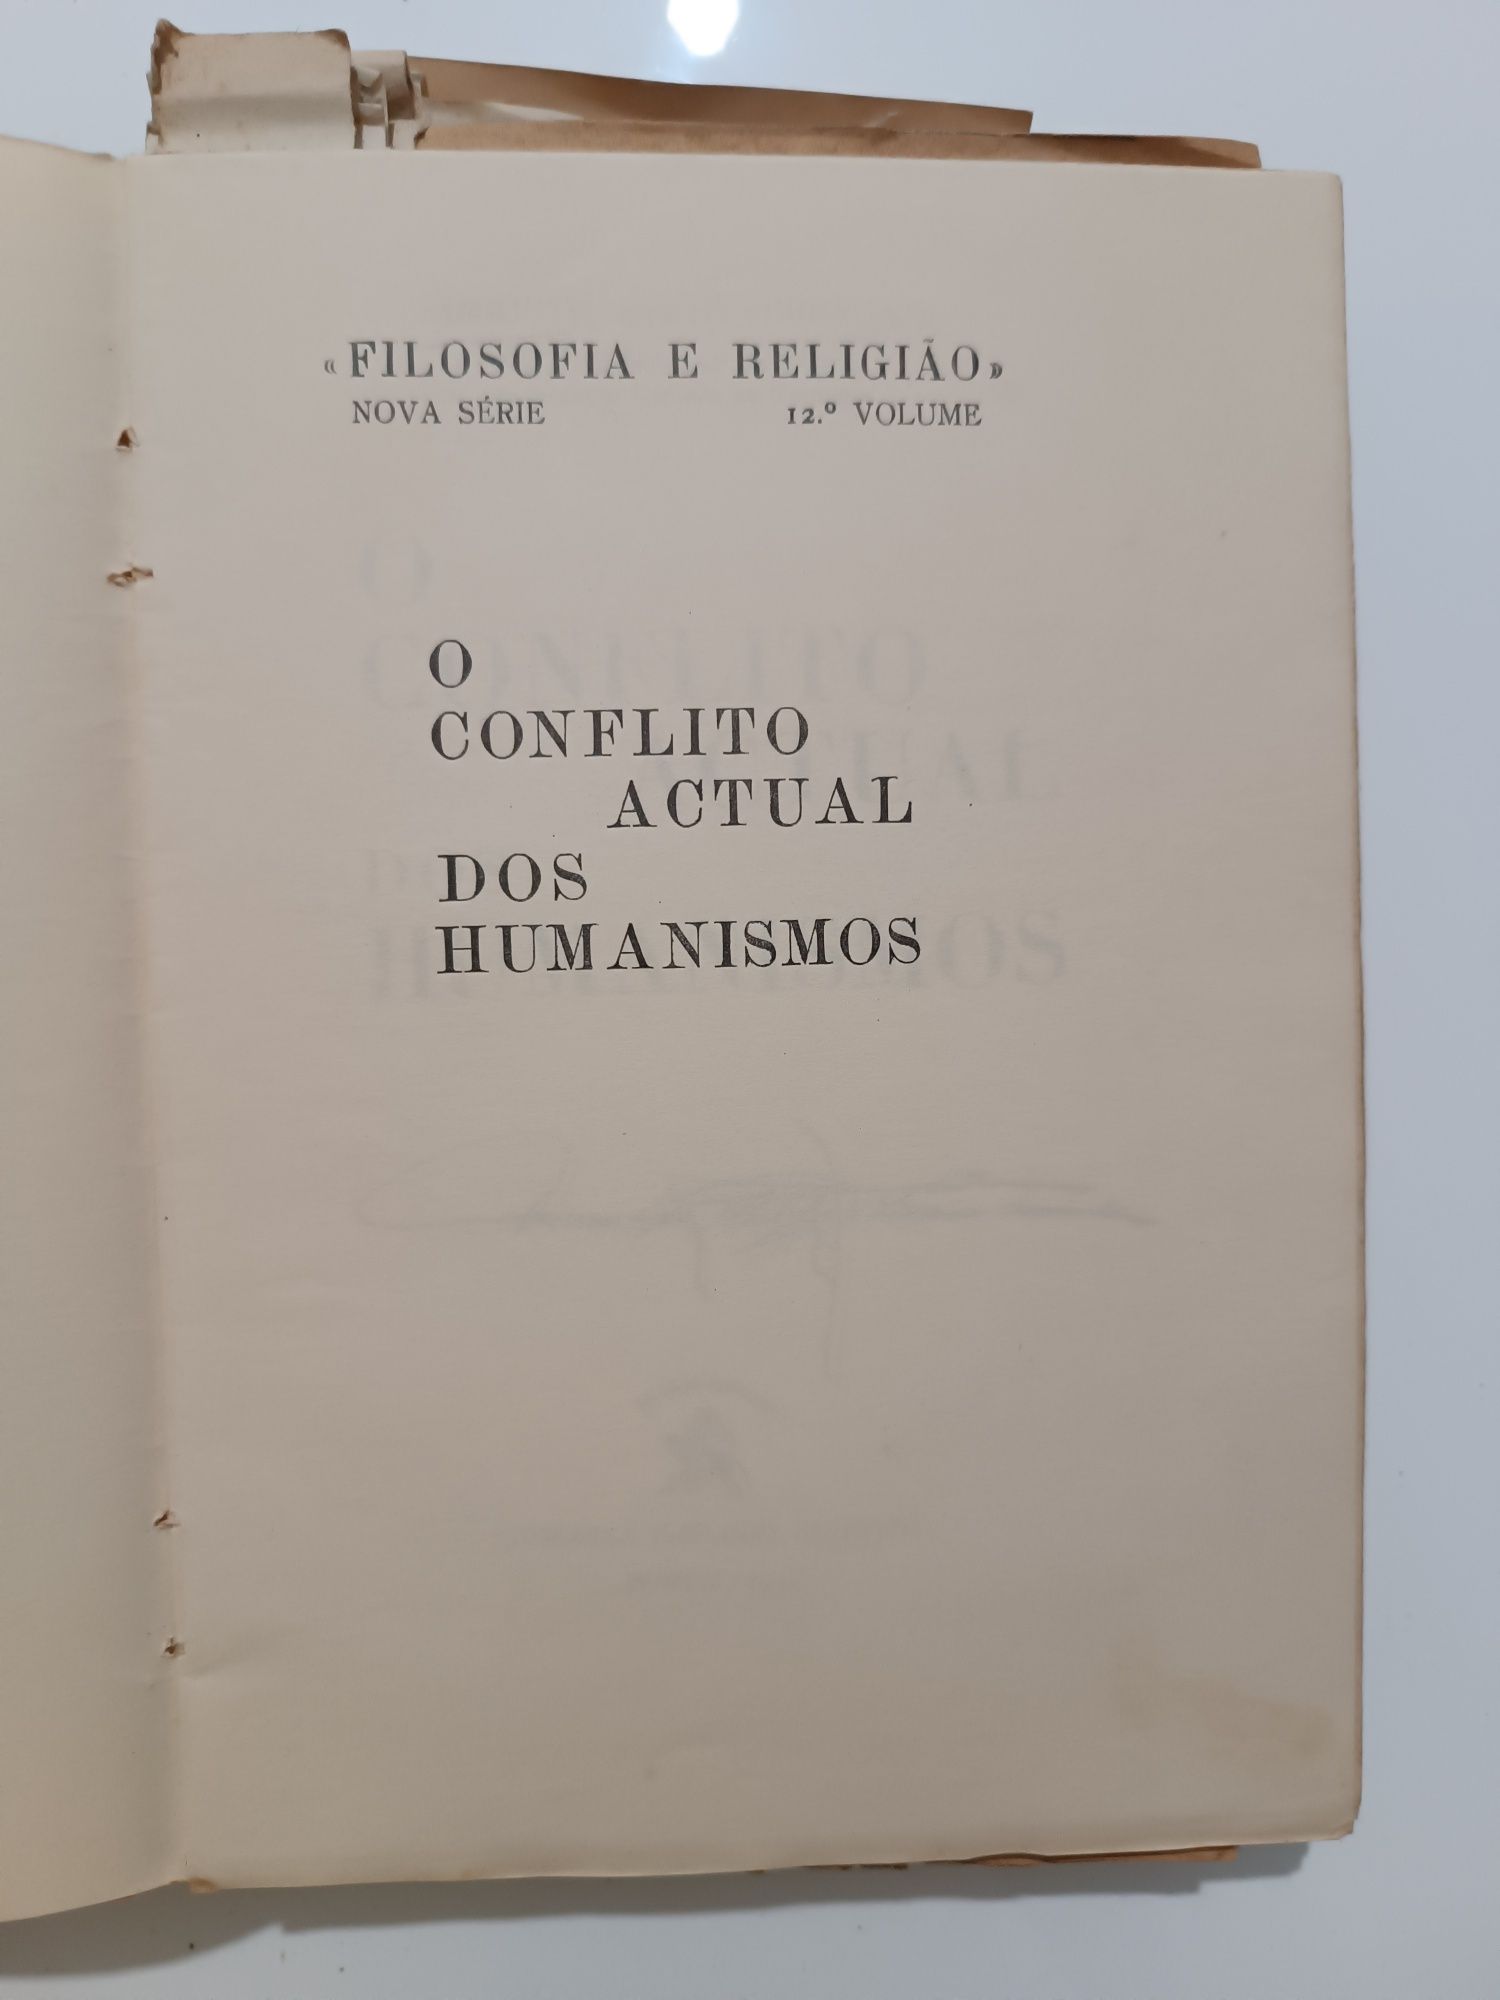 Livro "O Conflito Actual dos Humanismos"